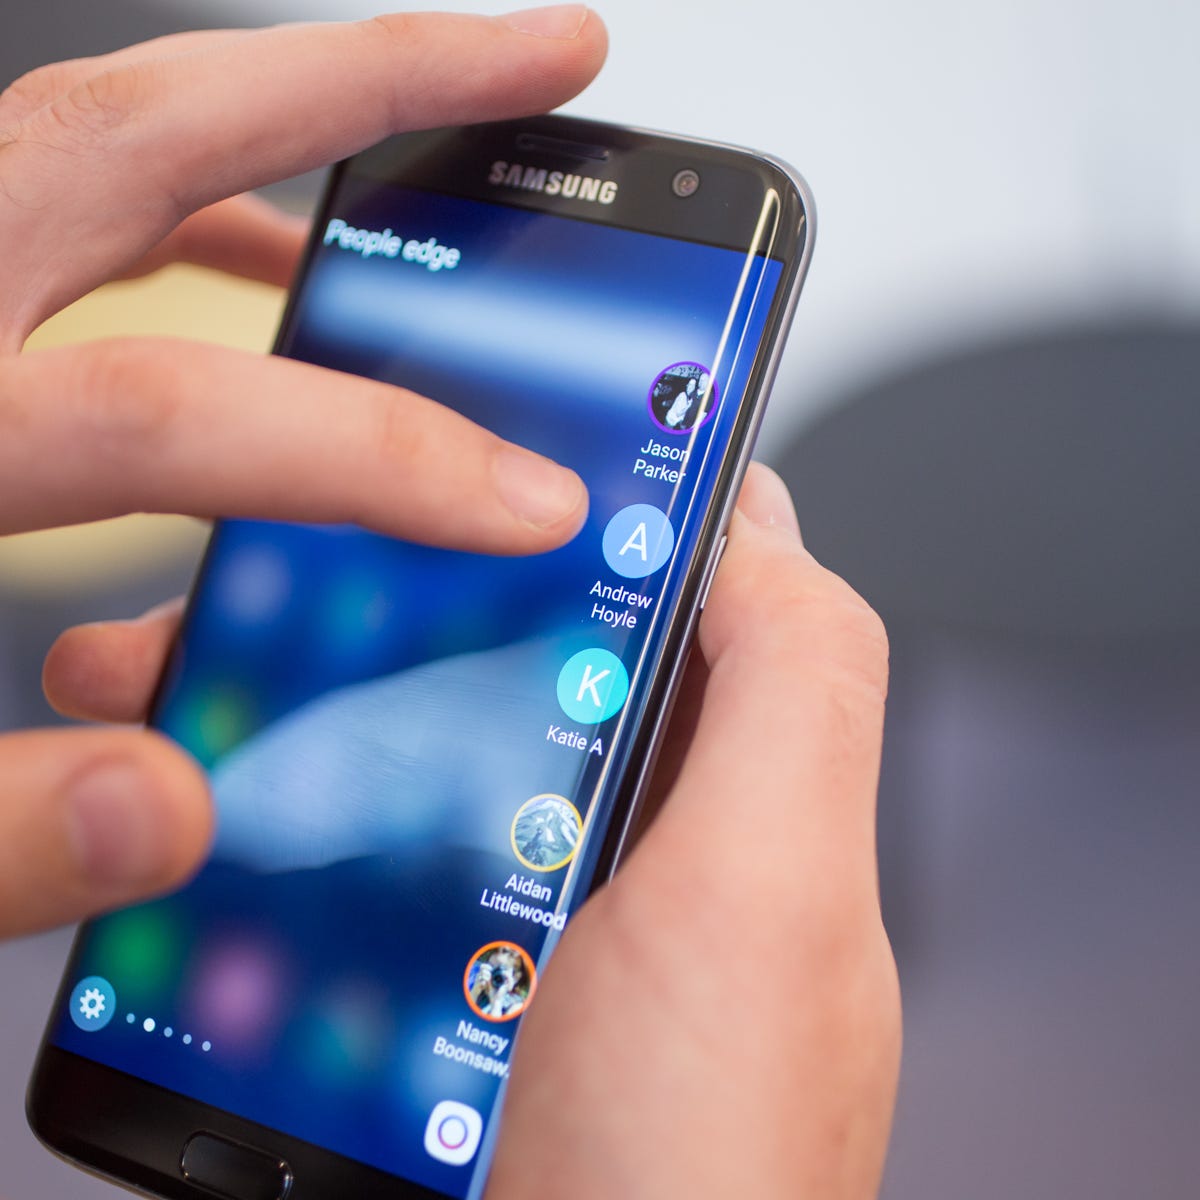 besejret udslettelse aktivt Samsung Galaxy S7 Edge review: The ultimate splurge - CNET